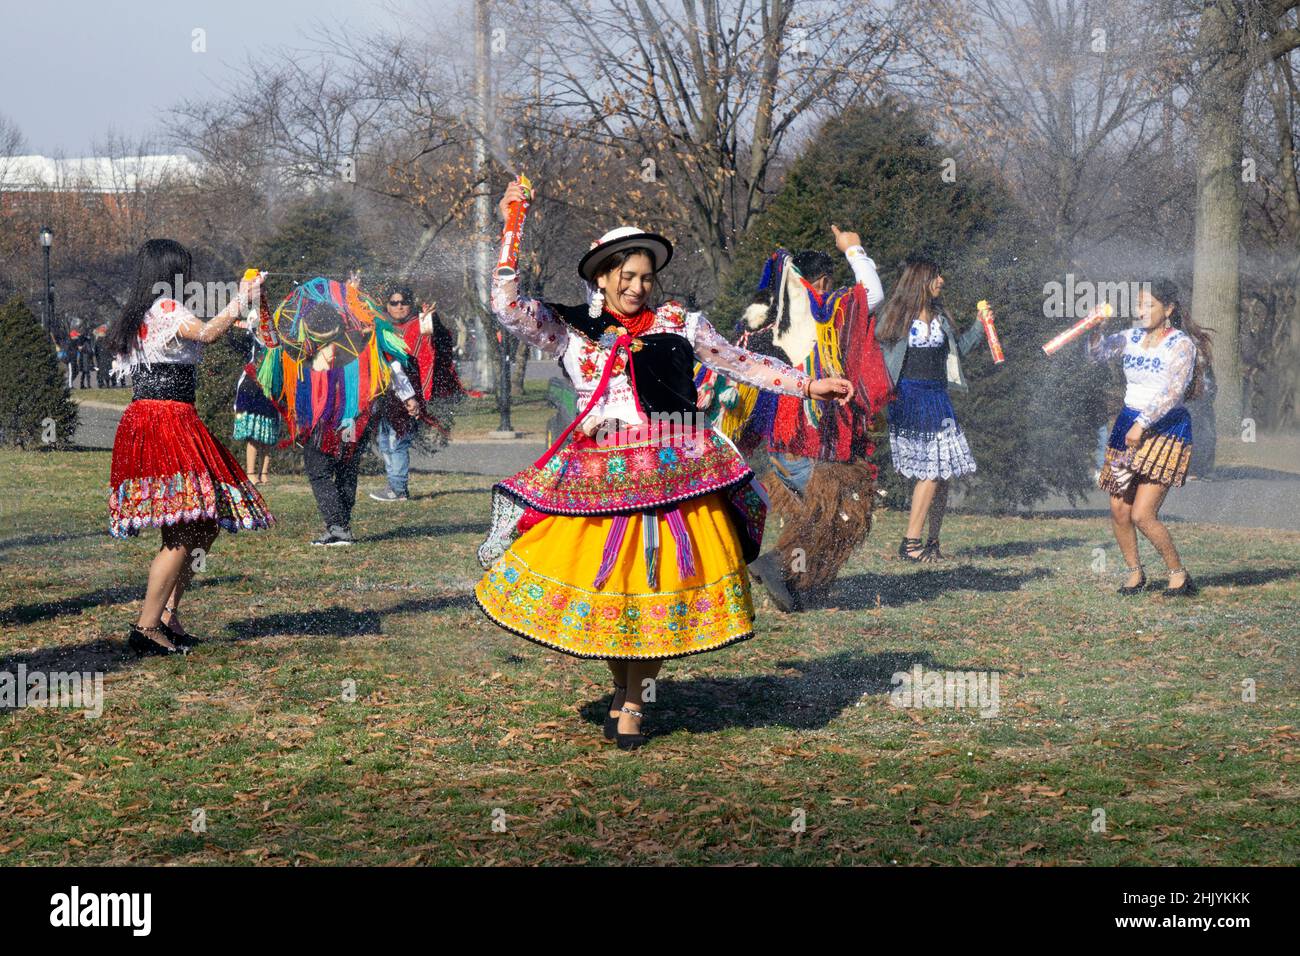 Männer und Frauen aus Ecuador tanzen und spielen Musik, während sie Carioca sprühen, ein Rasiercreme-Spray, das bei Feiern verwendet wird. In Queens, New York. Stockfoto